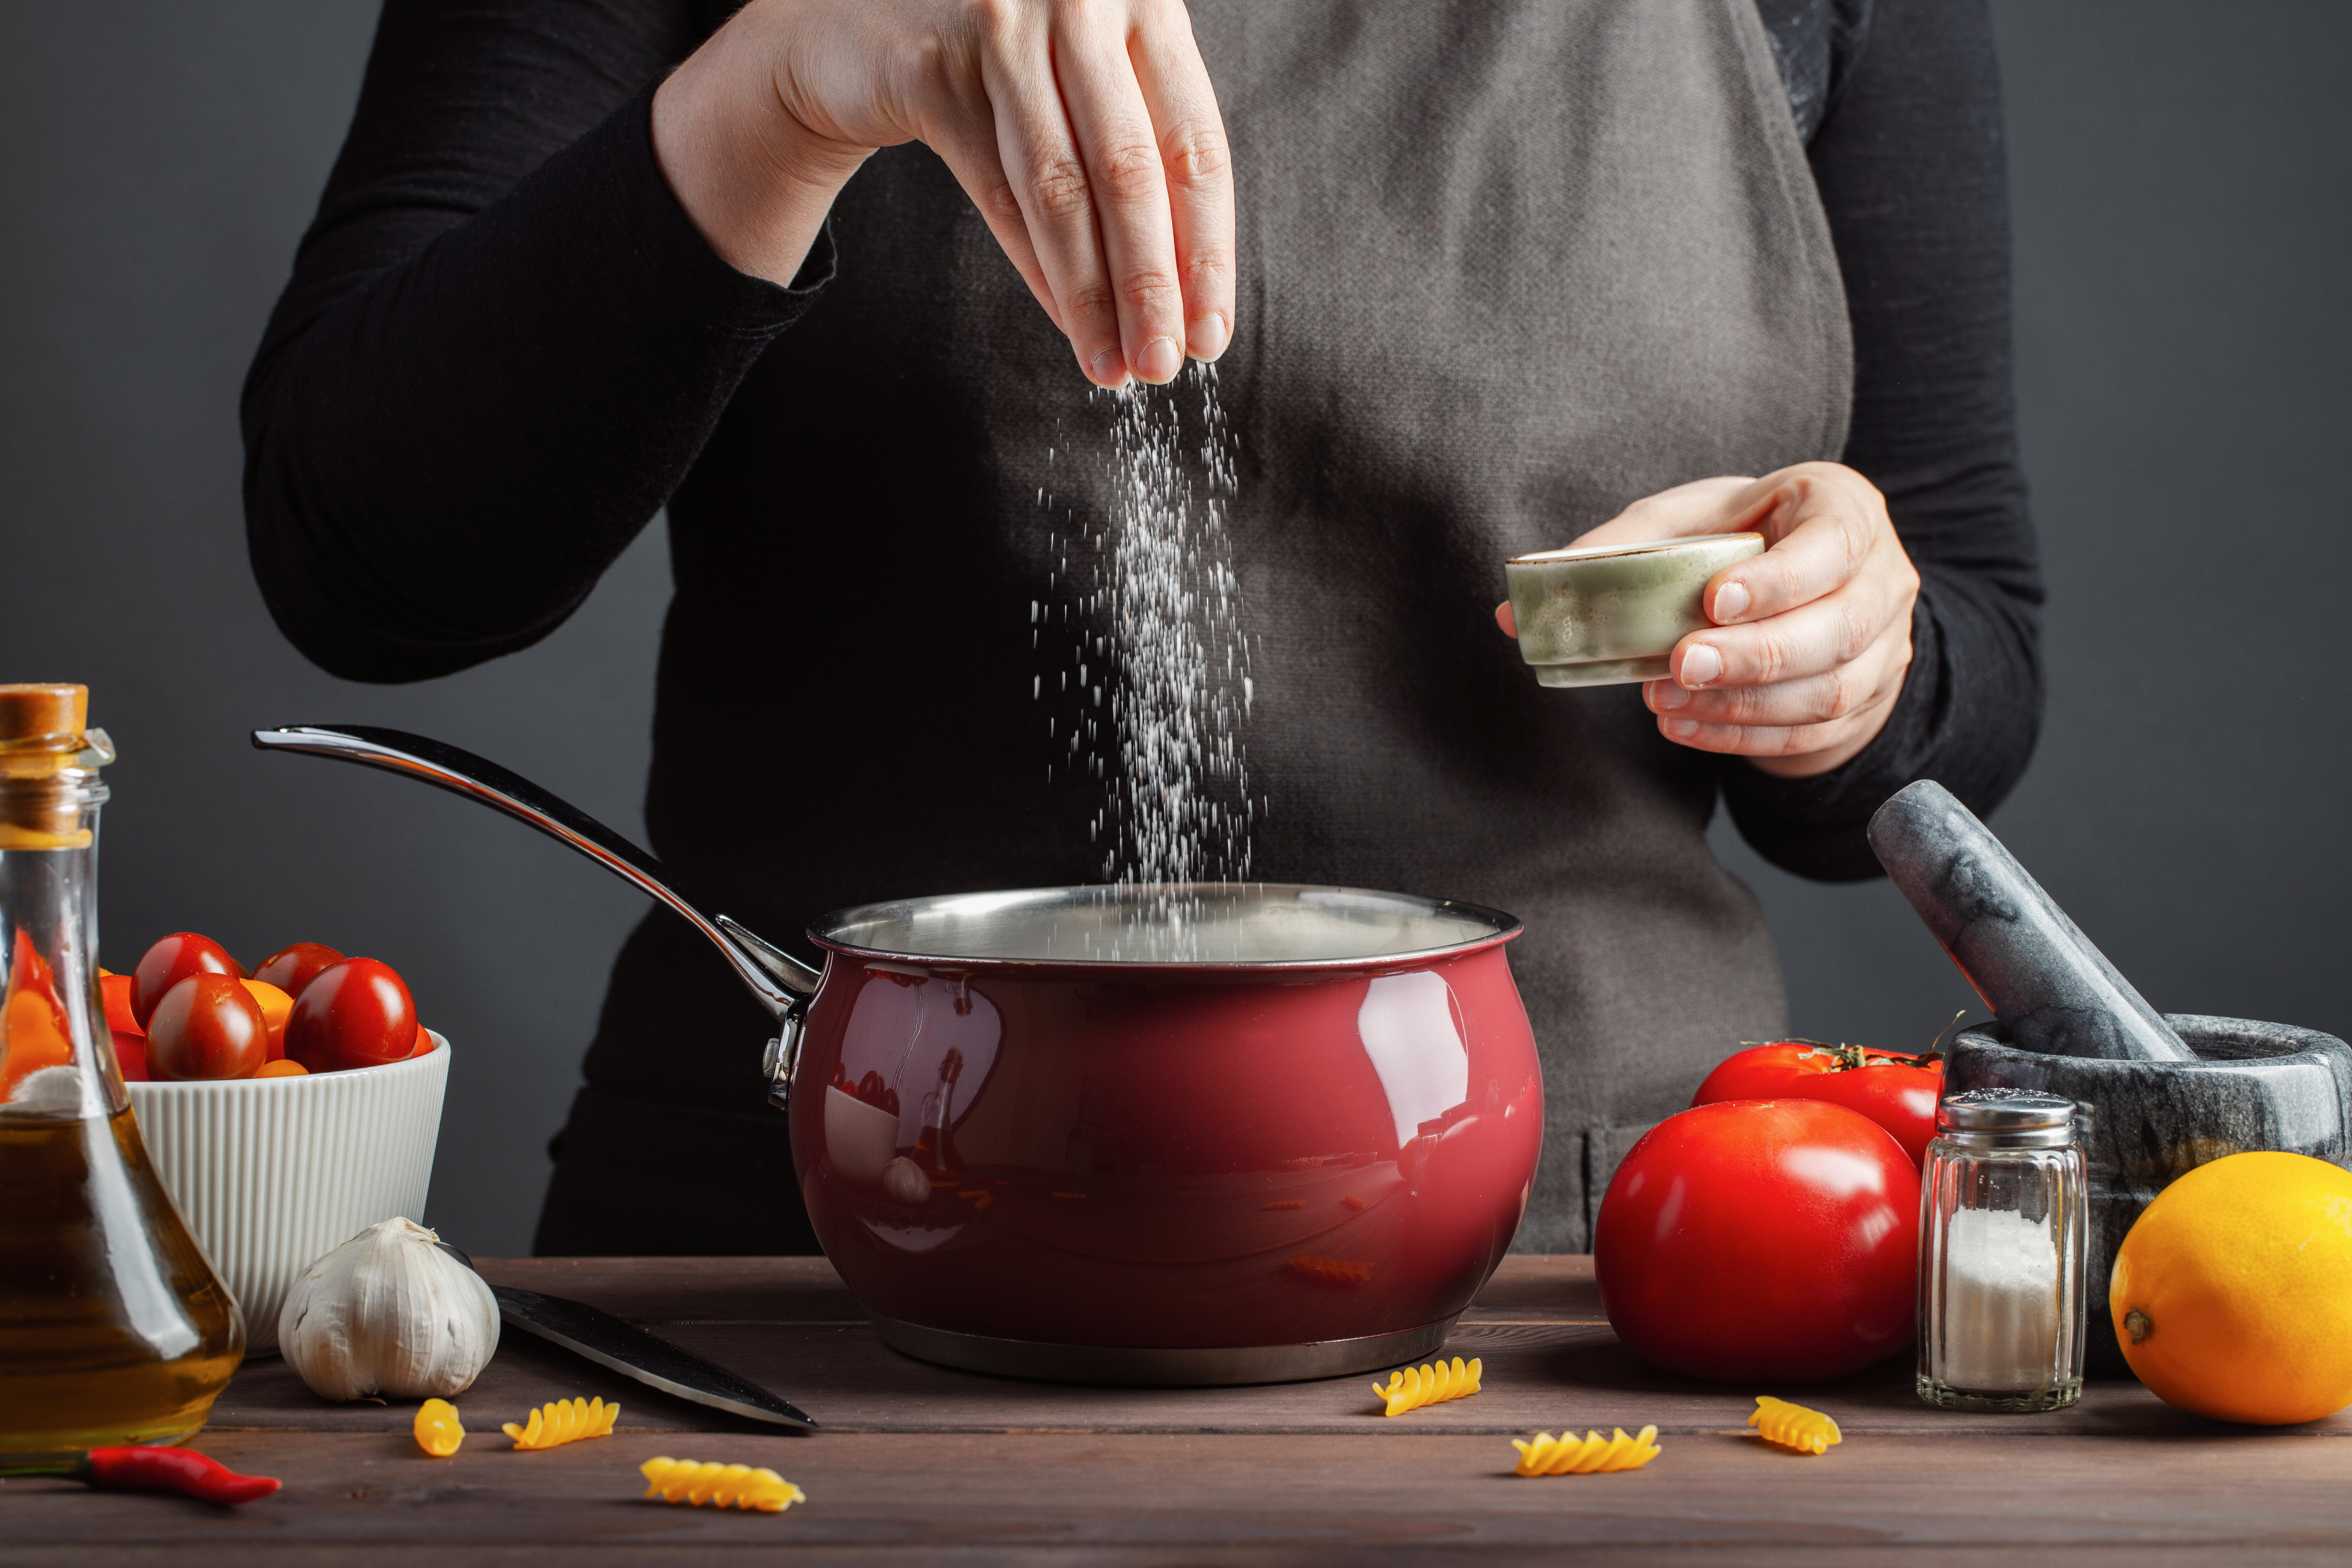 Une personne versant du sel dans un pot | Source : Shutterstock